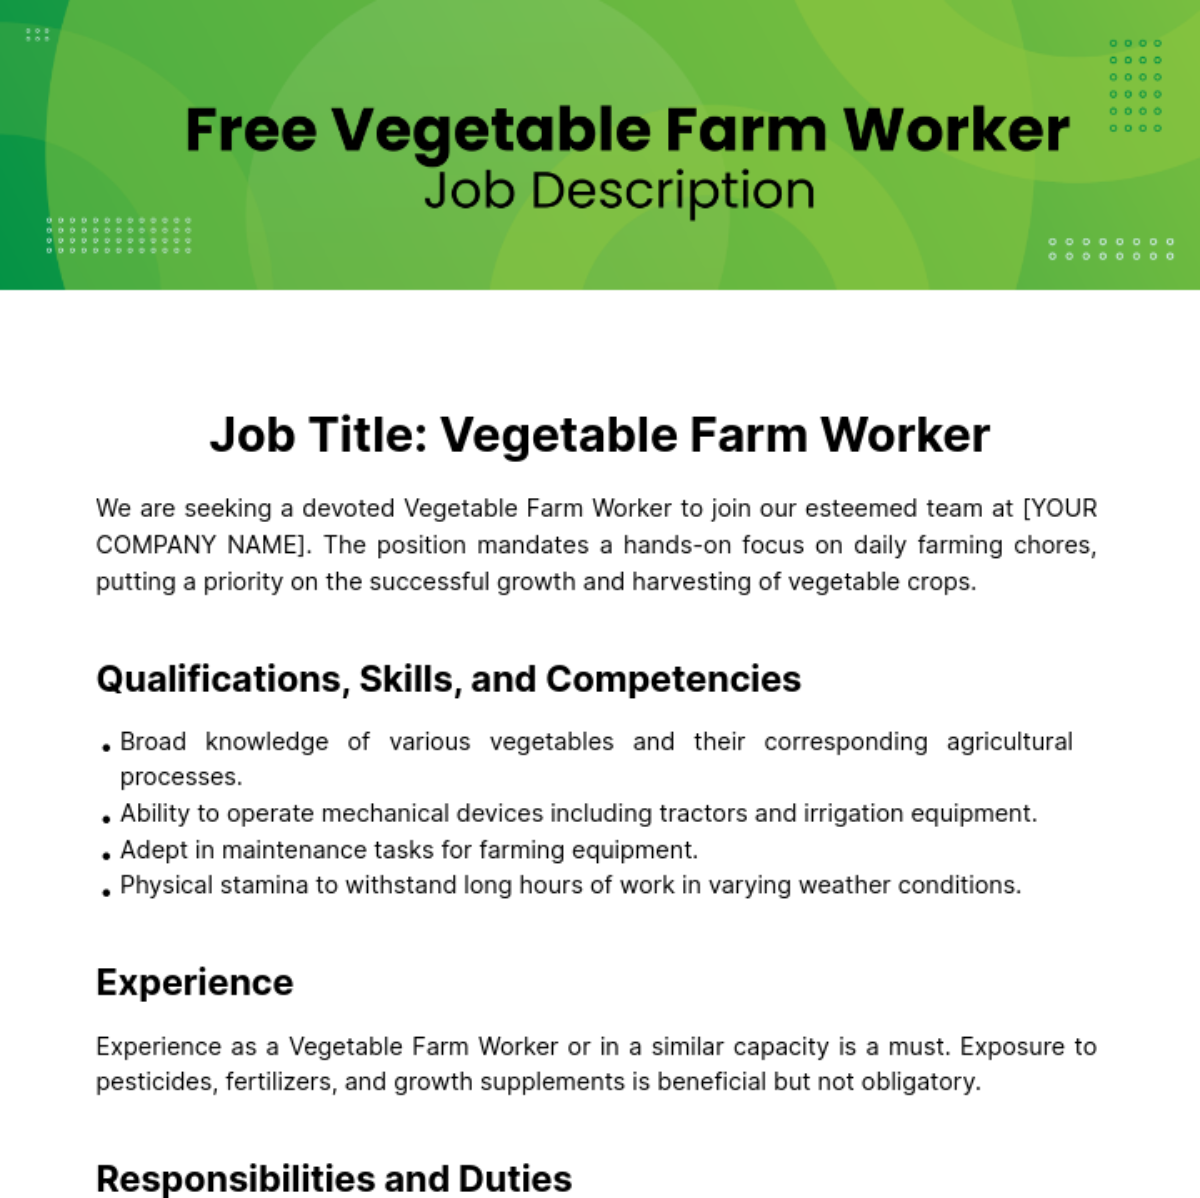 Free Vegetable Farm Worker Job Description Template